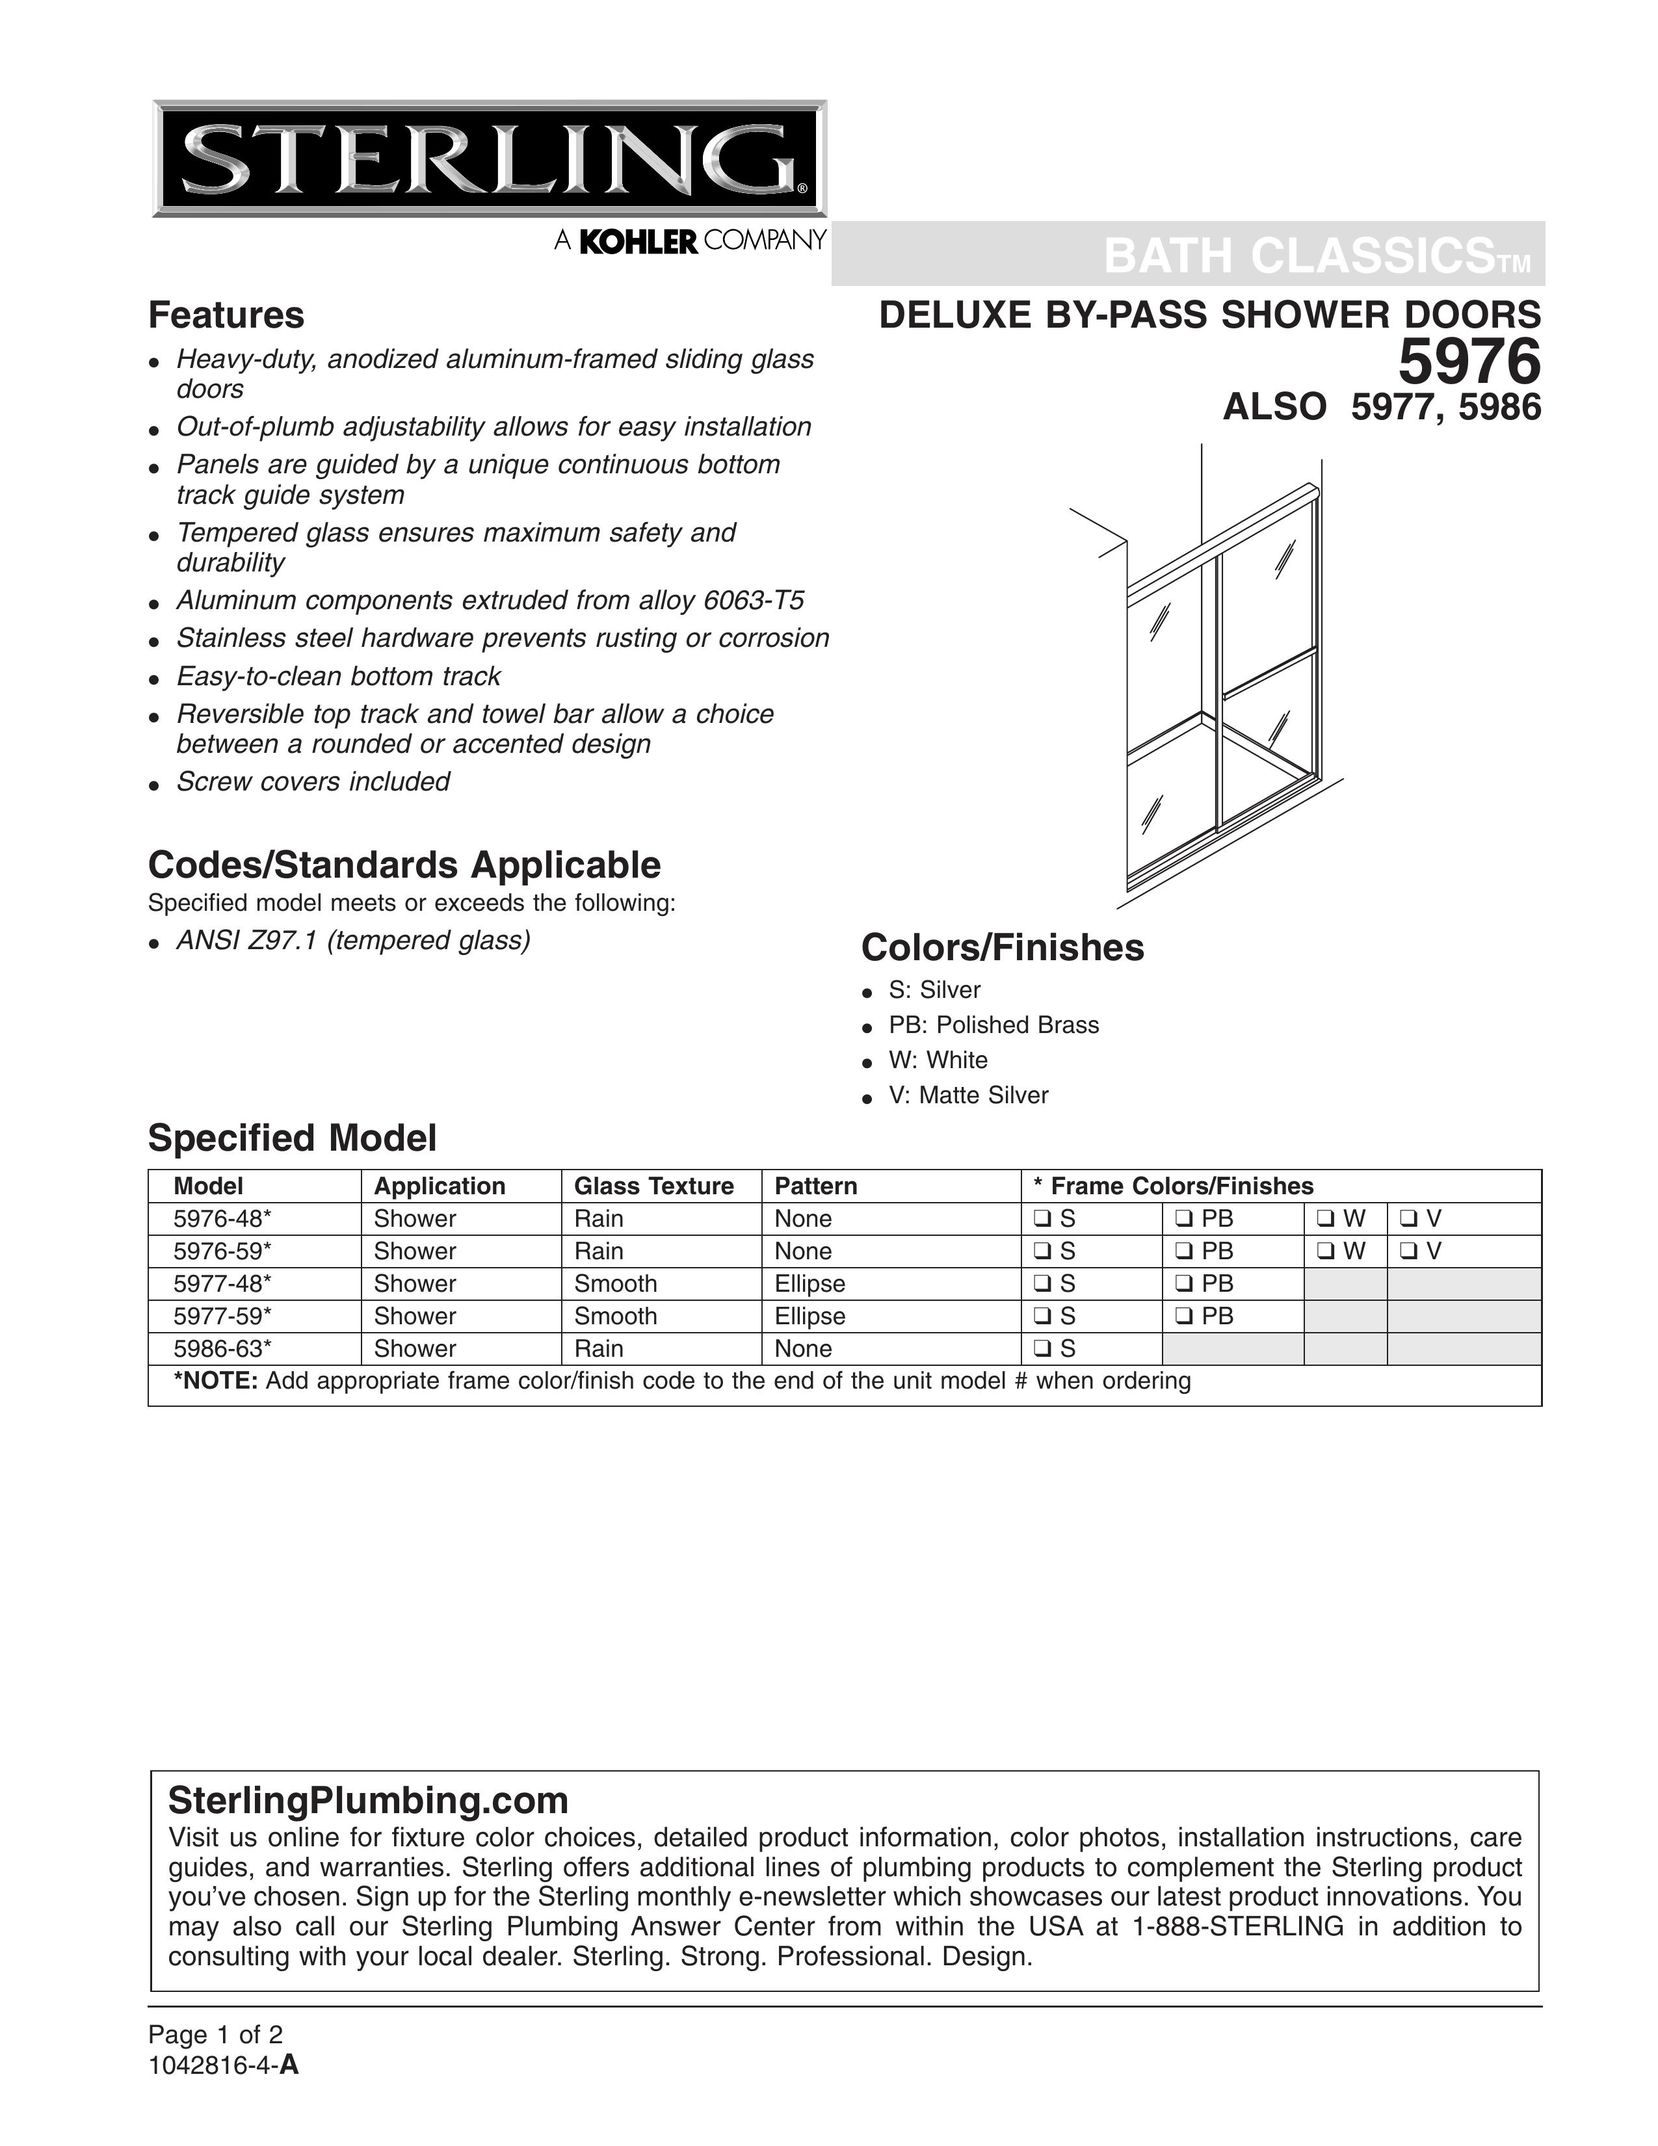 Sterling Plumbing 5977 Door User Manual